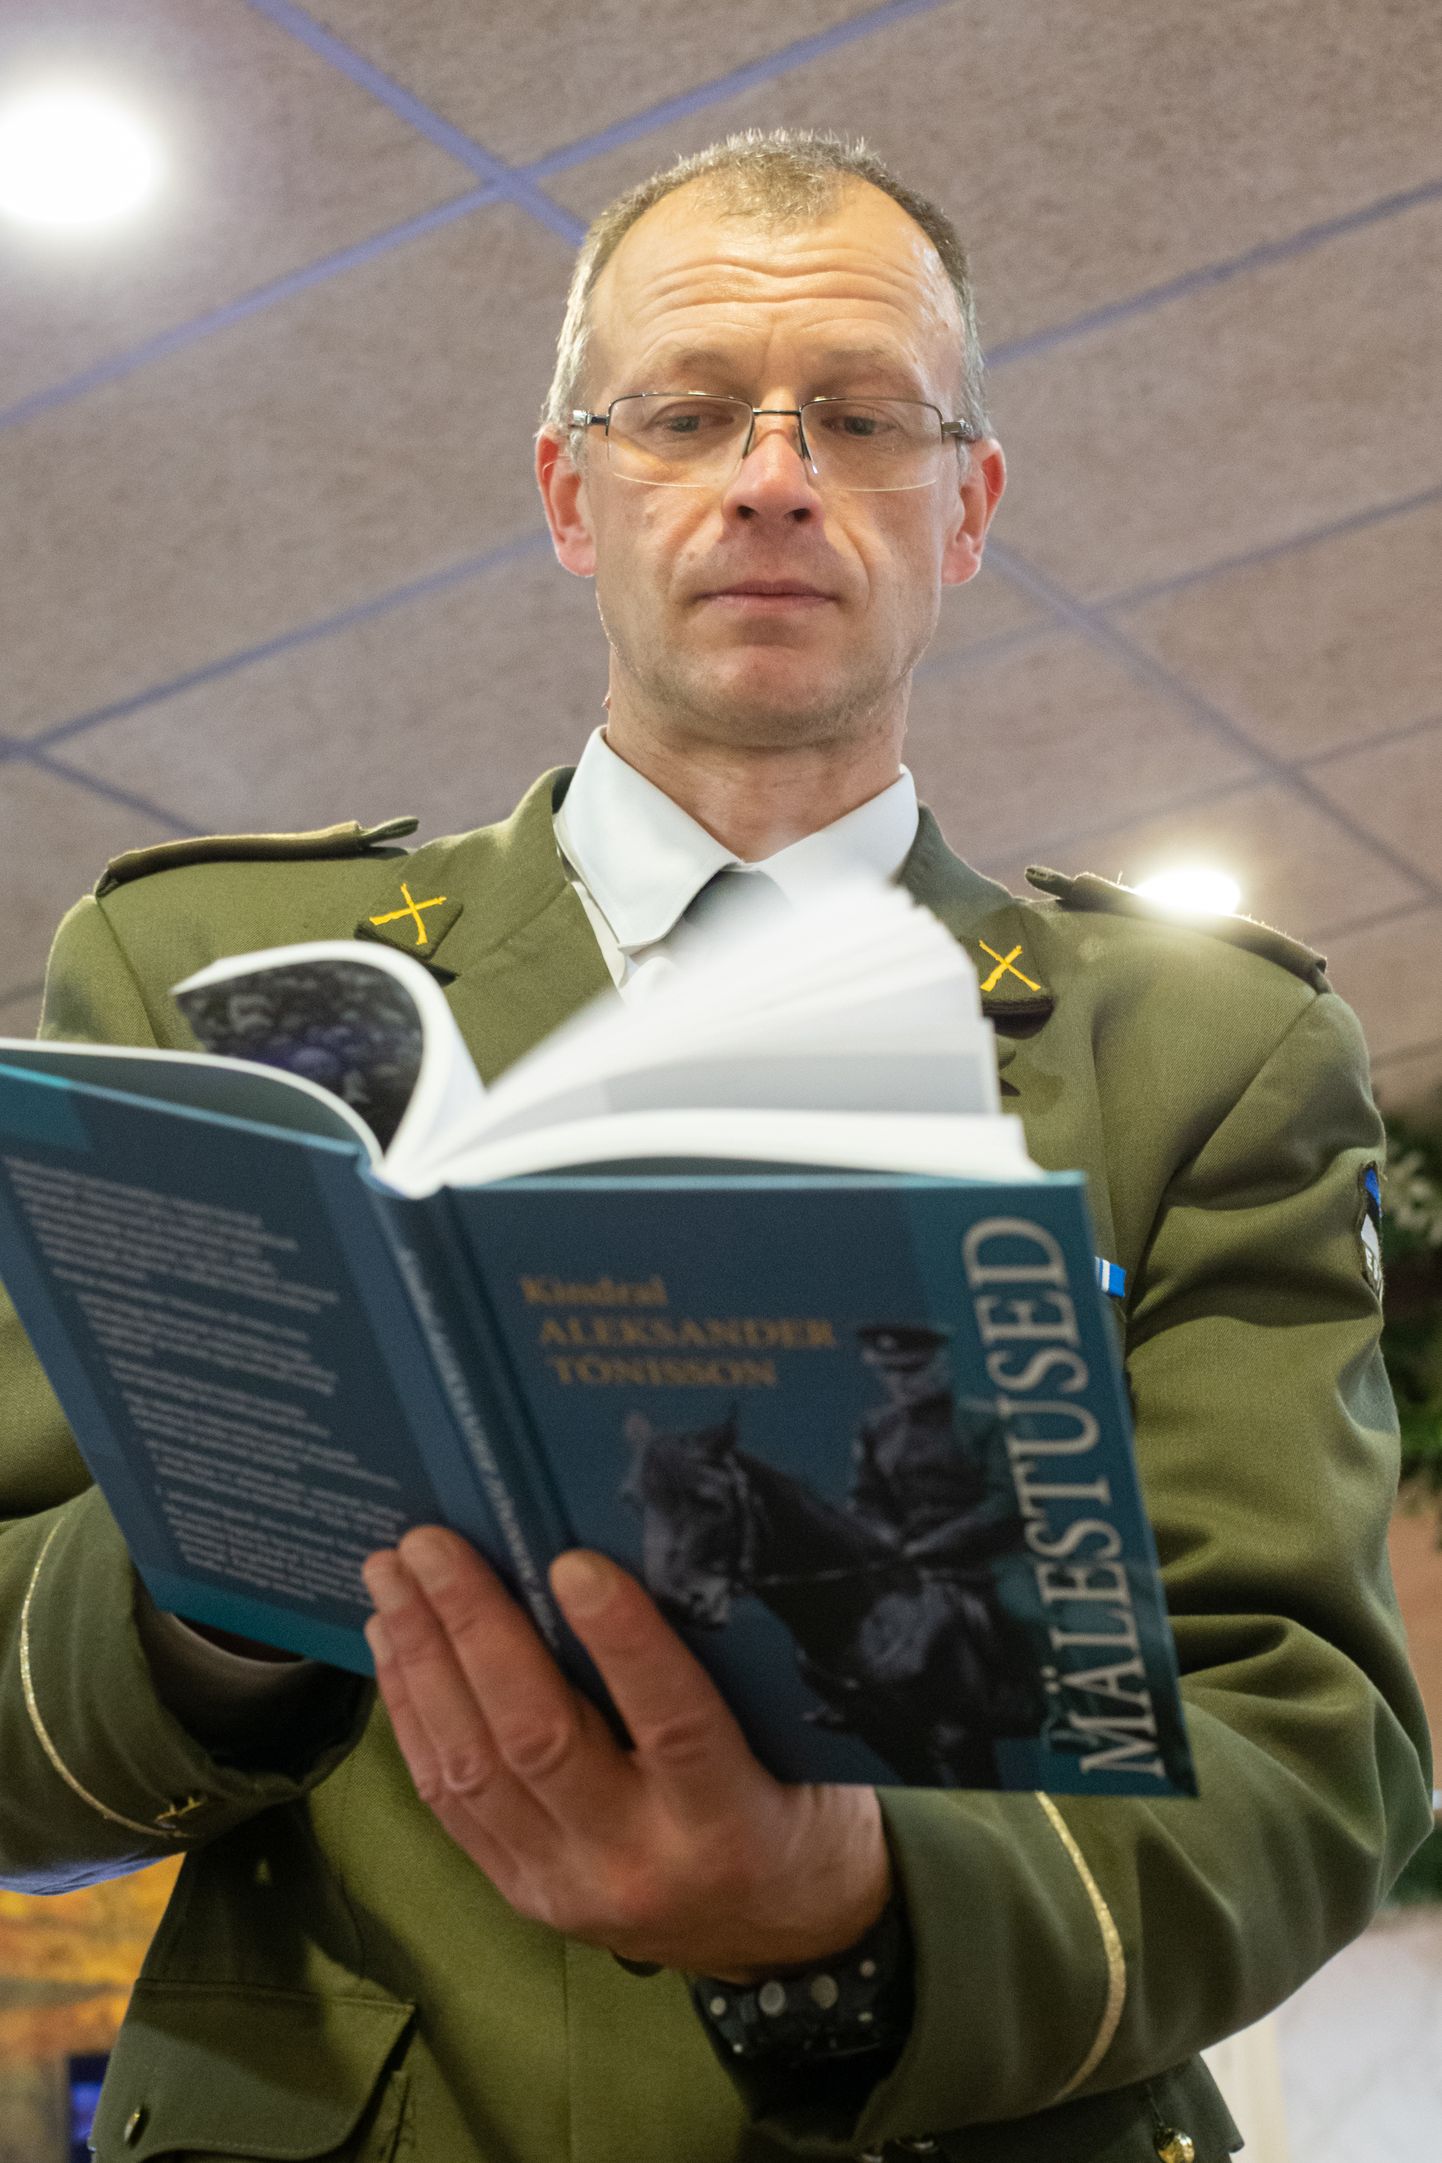 Aimar Kuldvere esitles eelmisel mälestuskonverentsil enda koostatud raamatut "Kindral Aleksander Tõnisson. Mälestused". Seekord räägib ta Vabadussõja-järgsest kaitseliidu loomisest ja tegevusest Jõhvi-Narva piirkonnas.